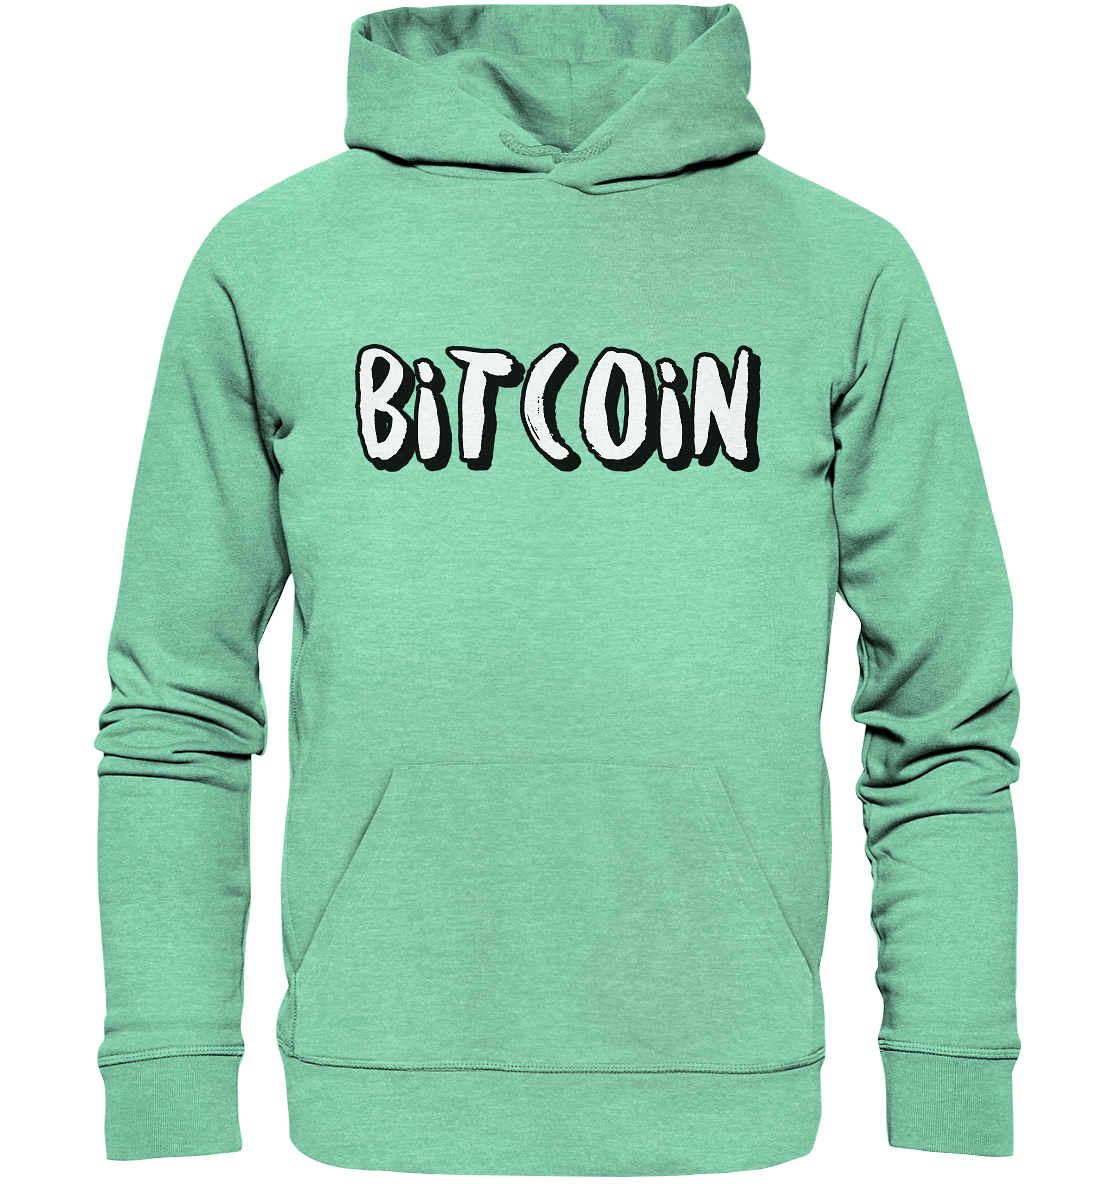 Bitcoin "typo 1"  - Organic Hoodie